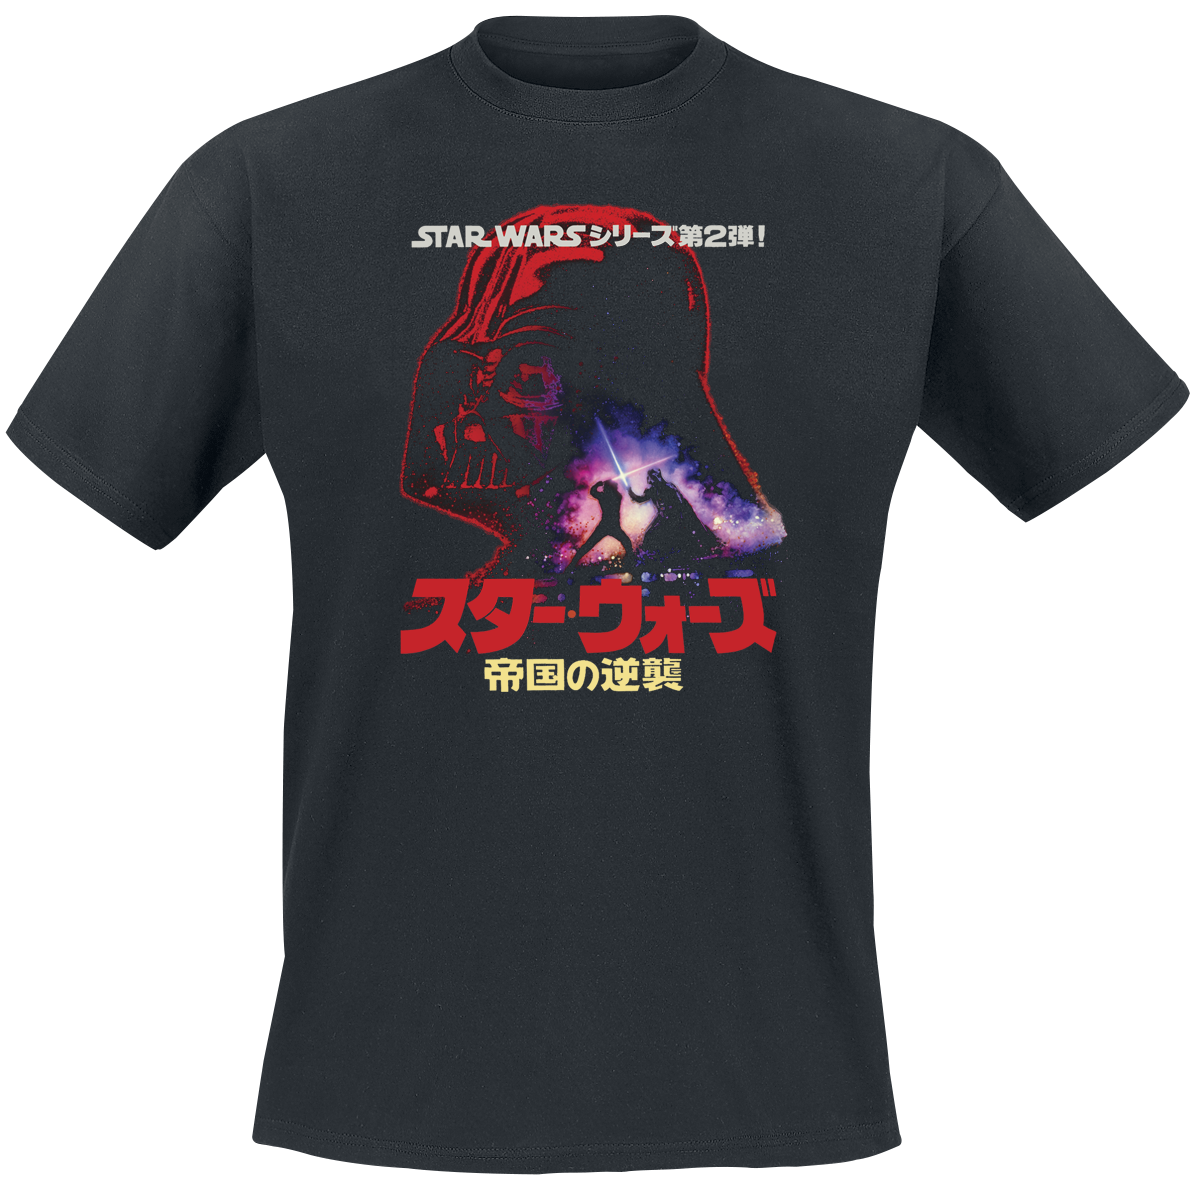 Star Wars - Darth Vader - Poster - T-Shirt - schwarz